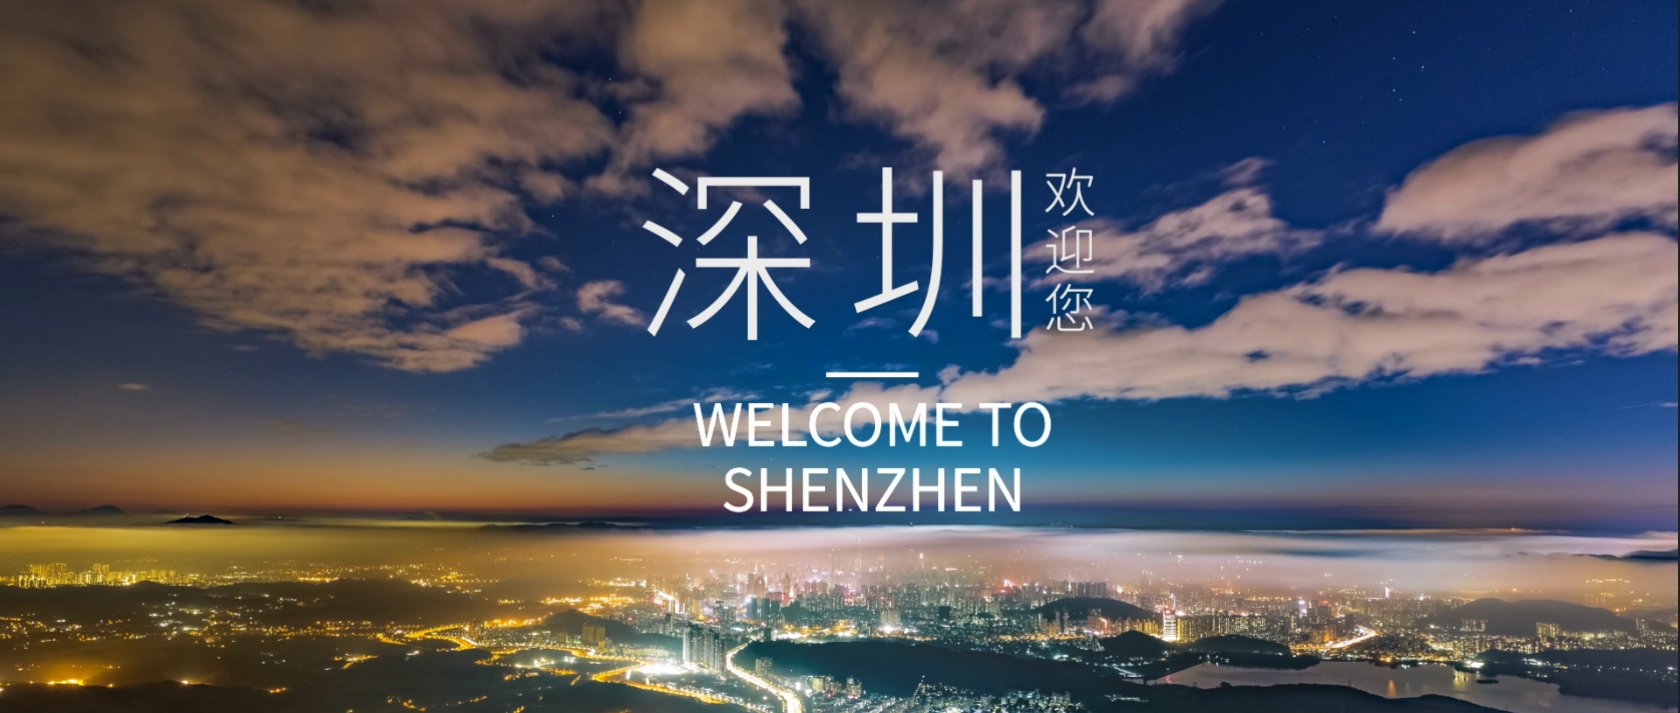 未来更精彩,深圳欢迎您!